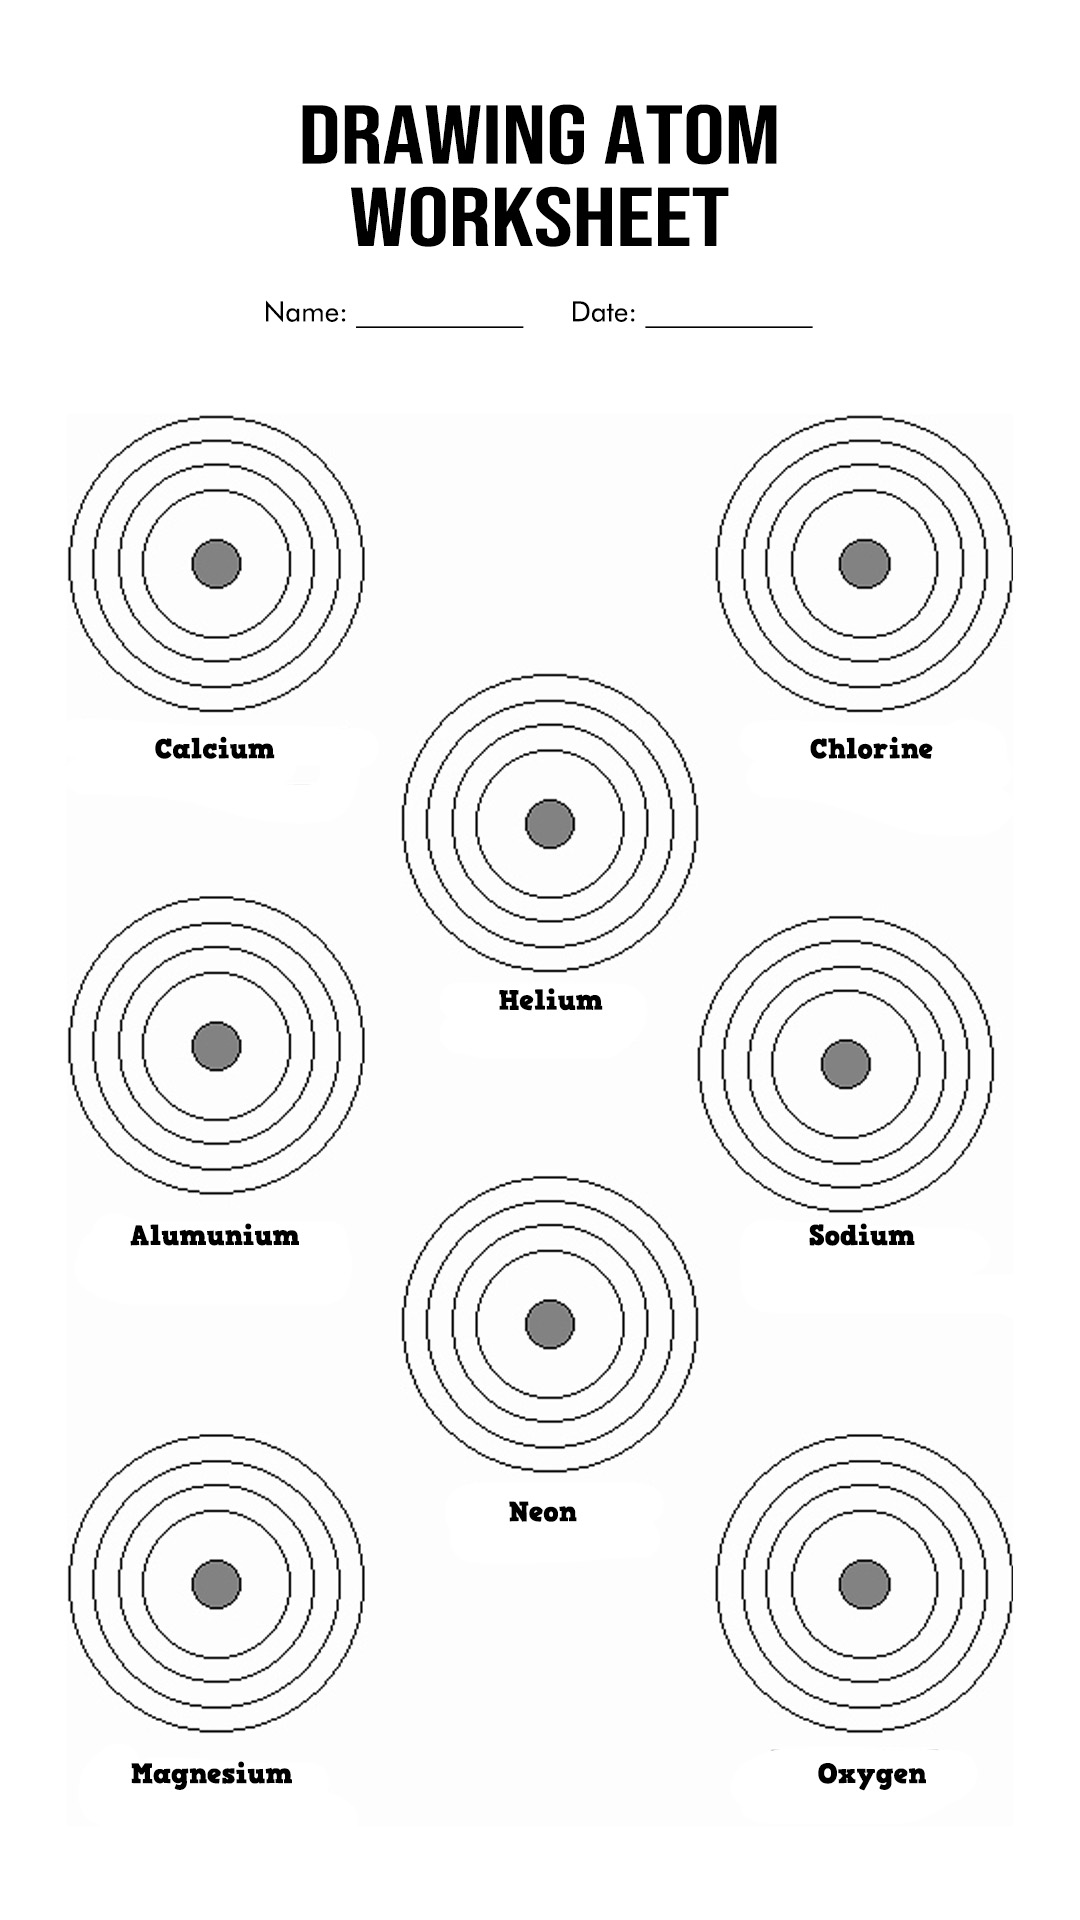 Drawing Atoms Worksheet Image